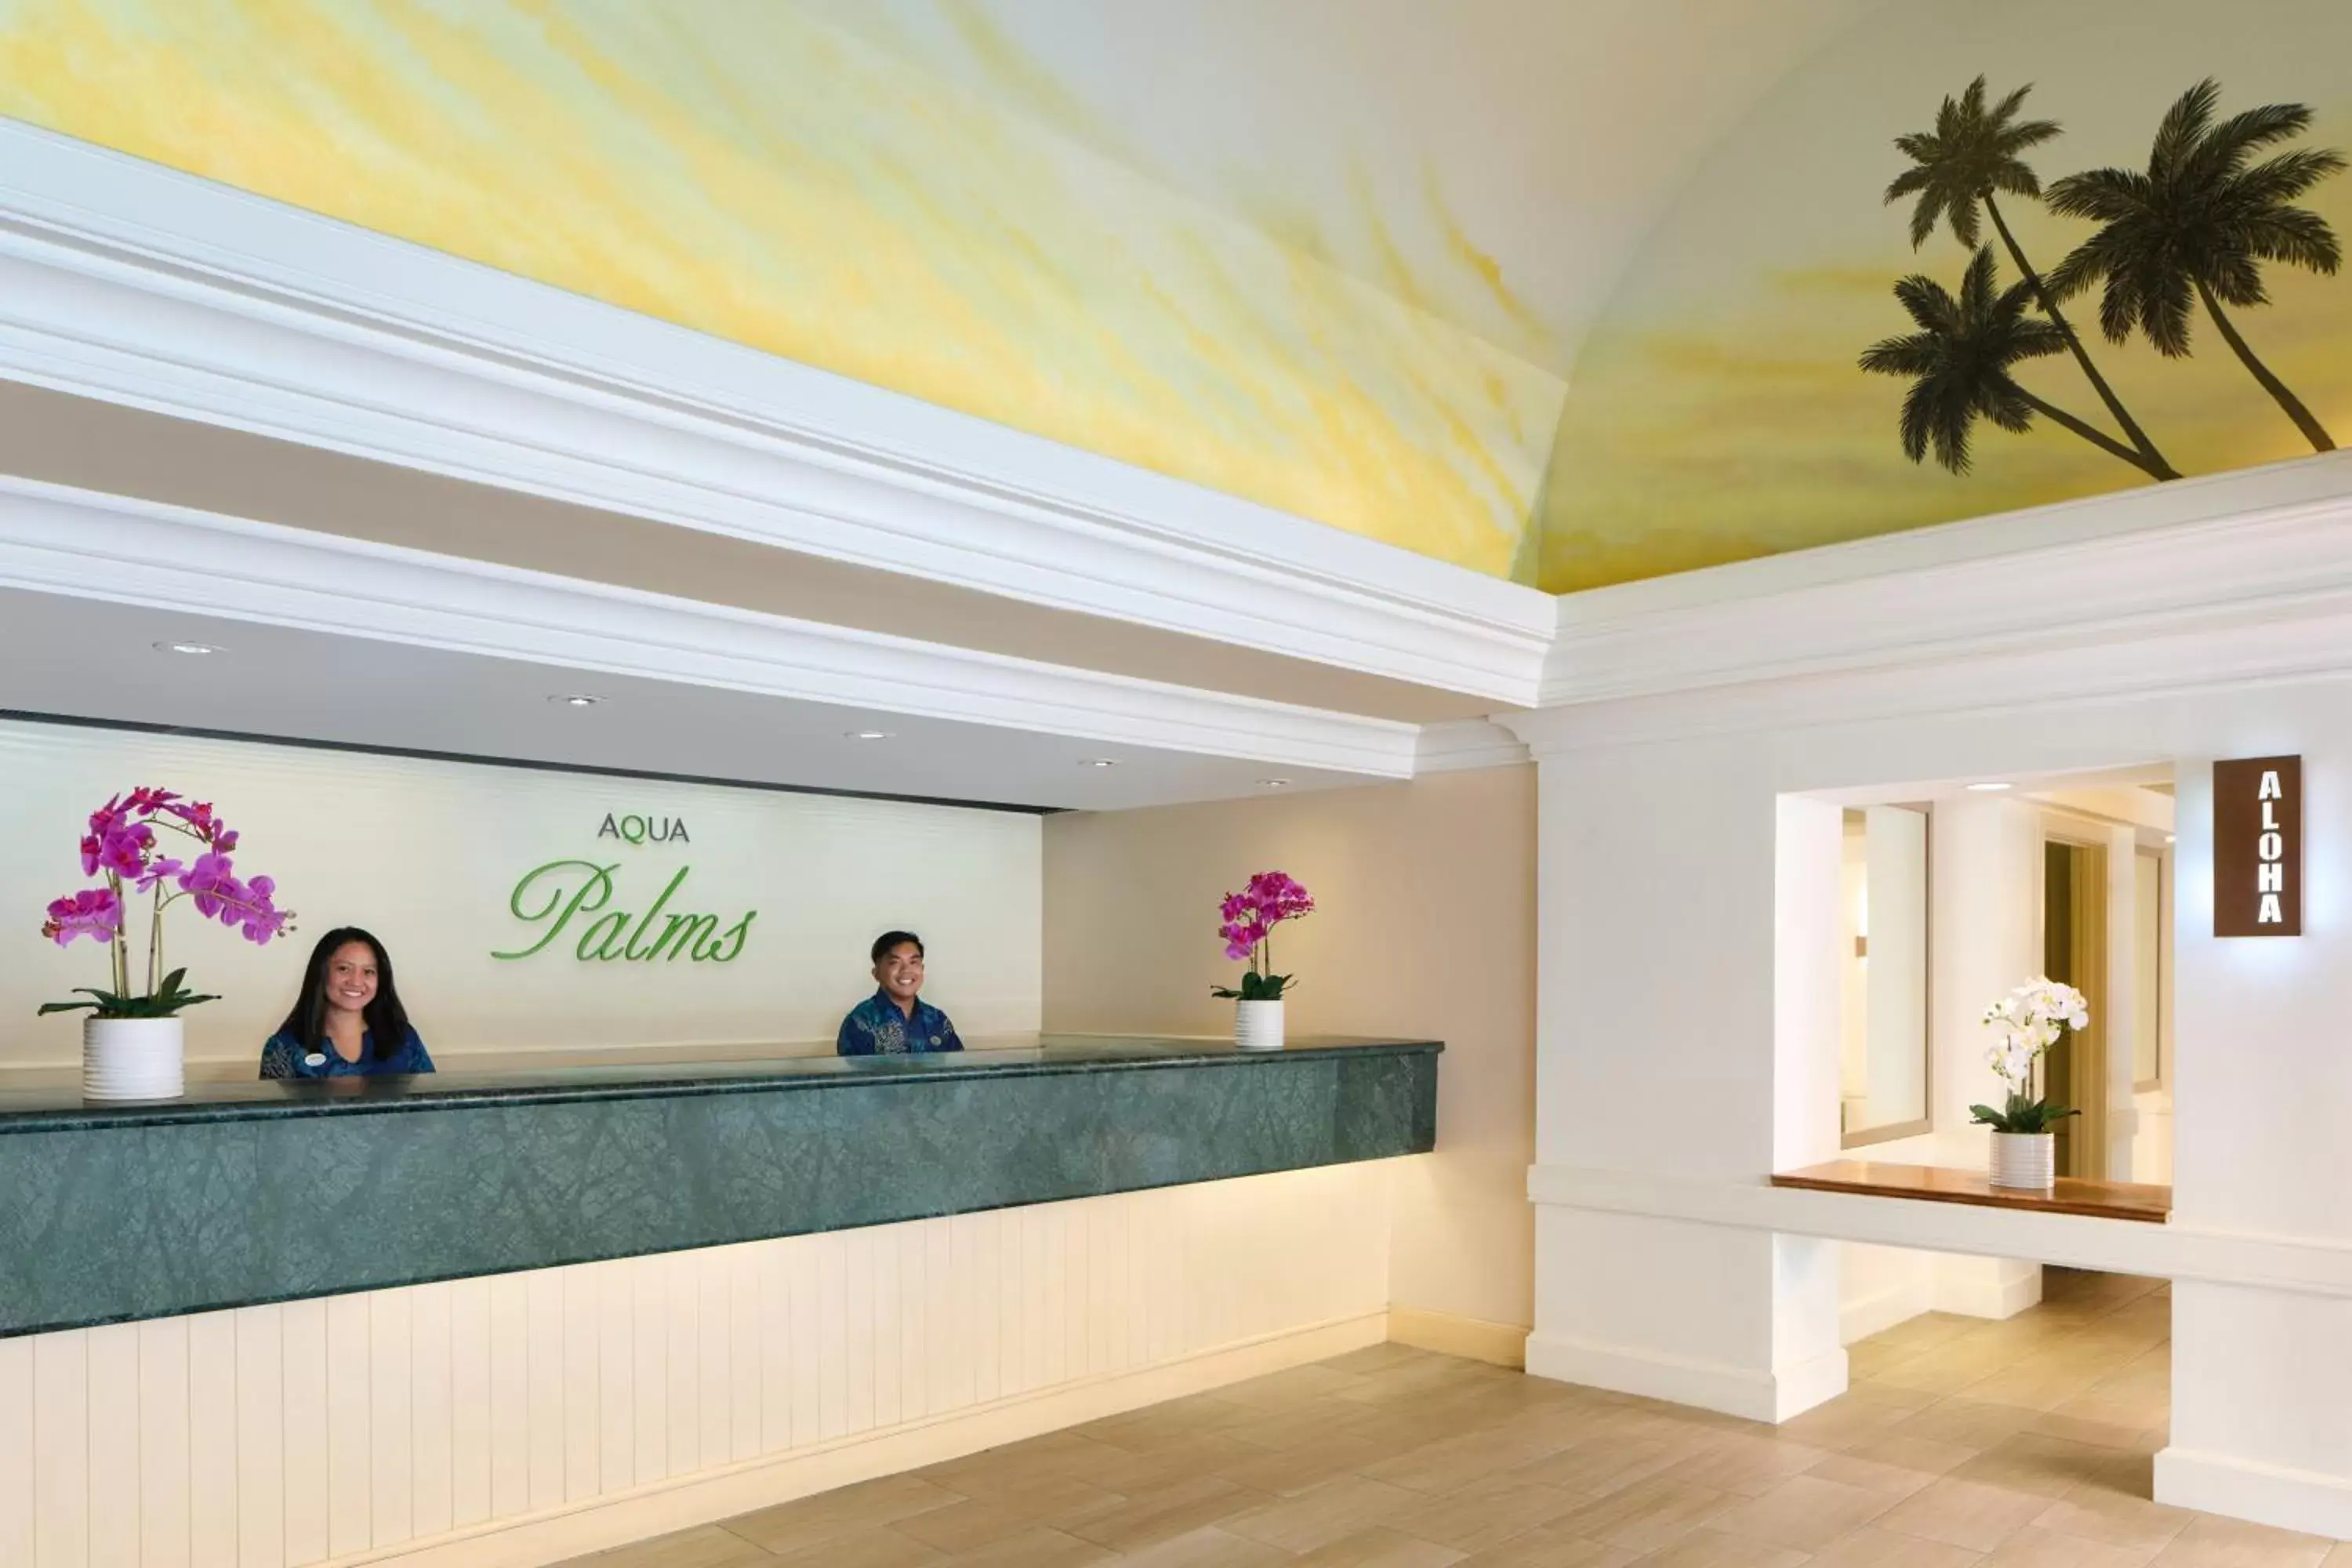 Lobby or reception in Aqua Palms Waikiki